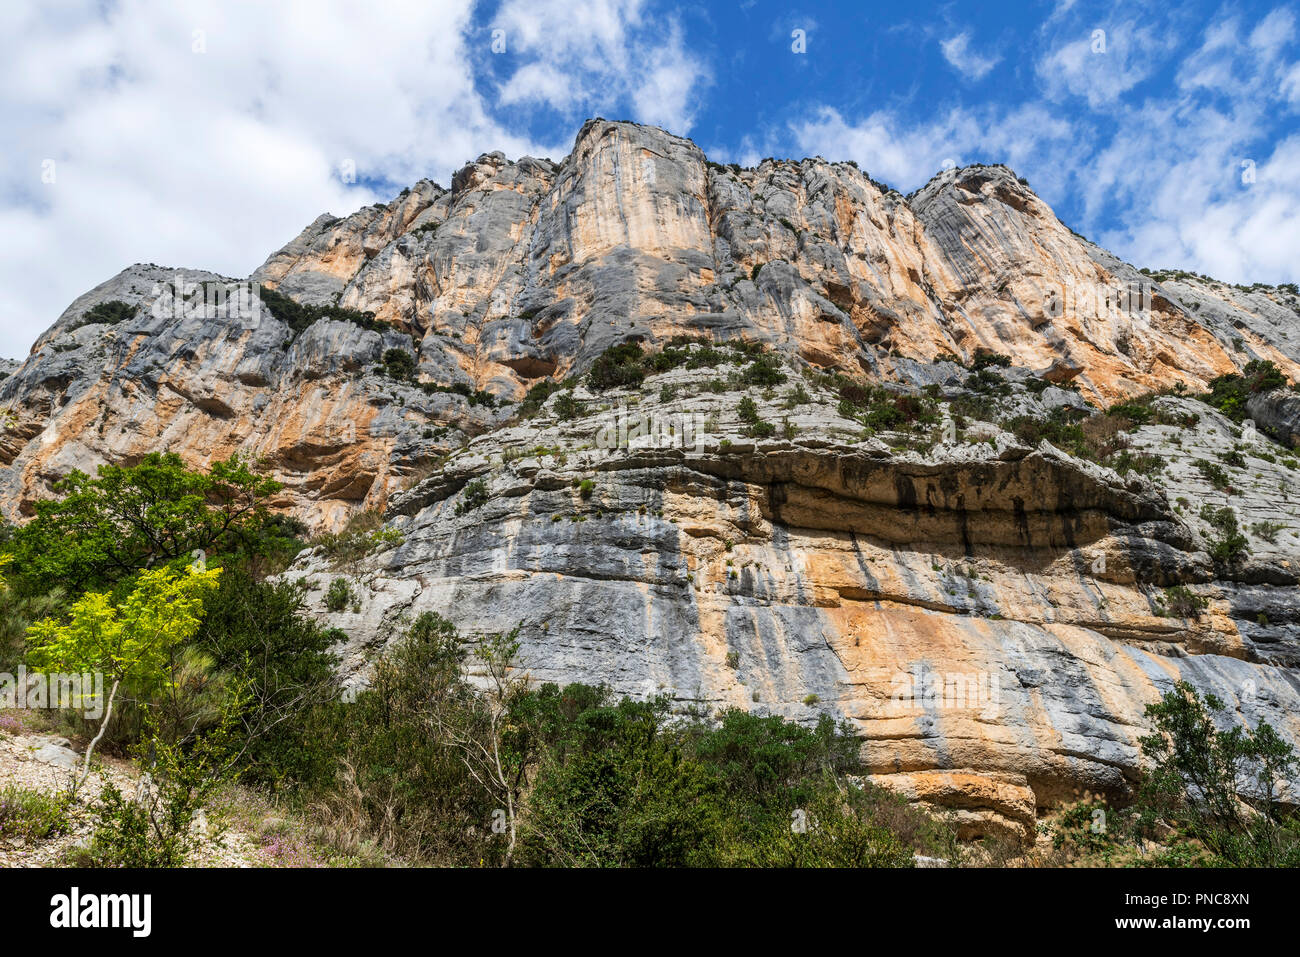 Vertikale Kalkstein aus dem Sentier Martel in den Gorges du Verdon Verdon Schlucht / Canyon, Provence-Alpes-Côte d'Azur, Frankreich Stockfoto